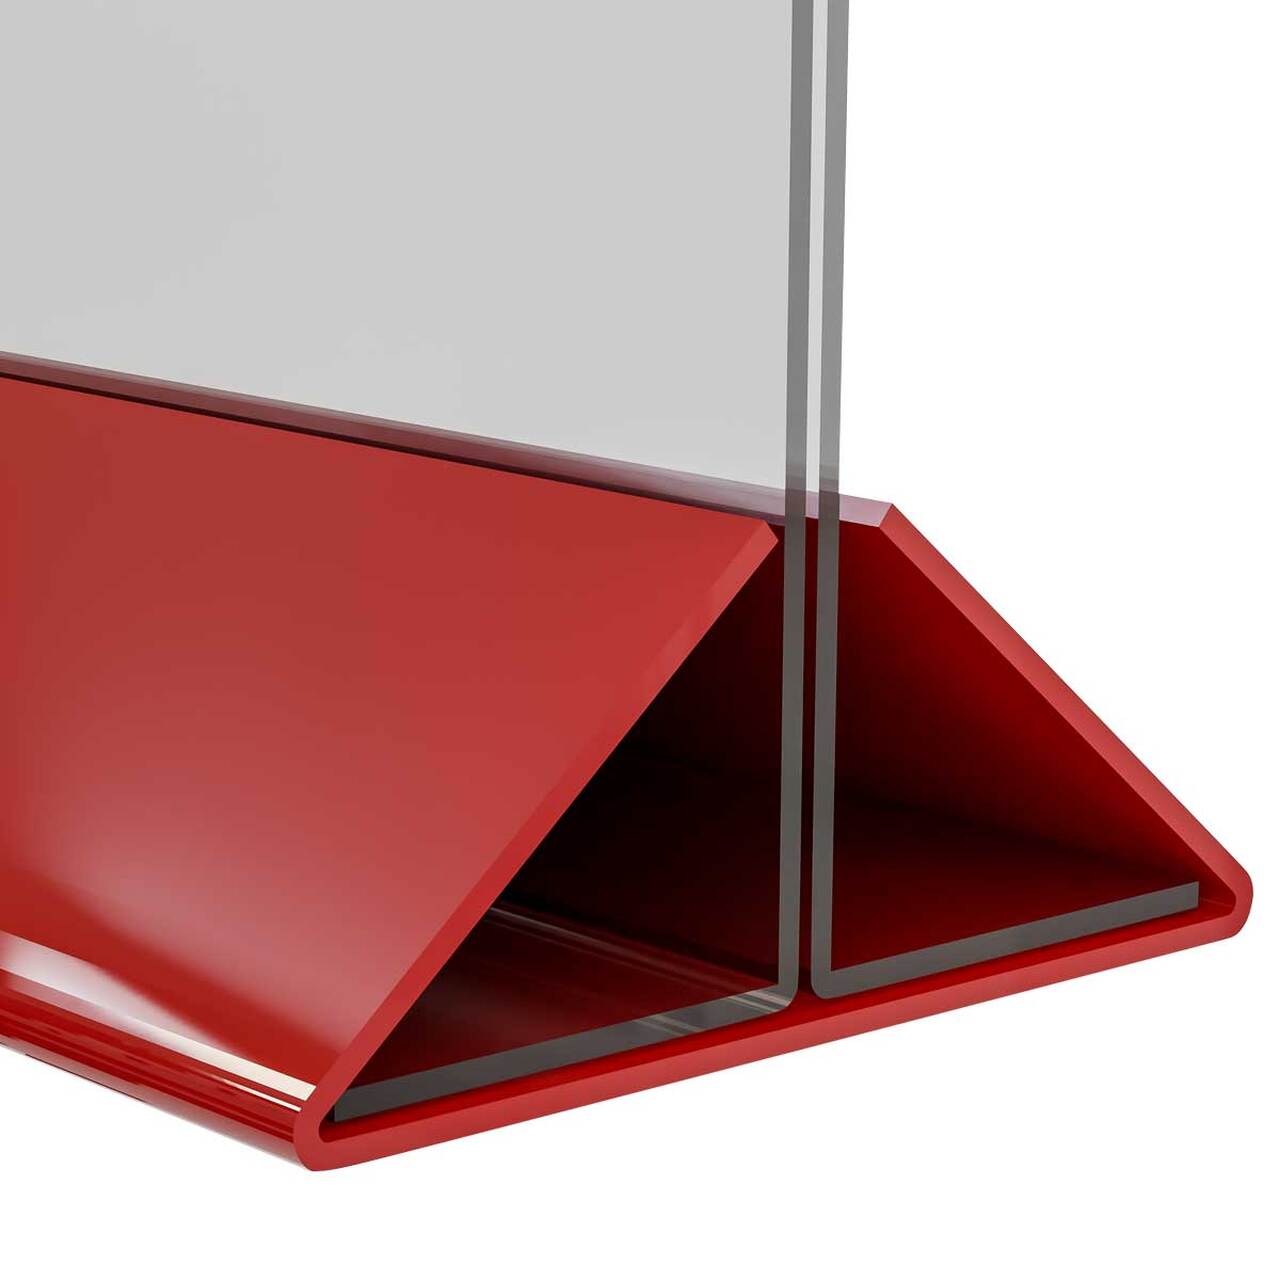 Suport meniu tip T, transparent, cu bază din plexiglas roșu, format A4(210x297mm), Landscape